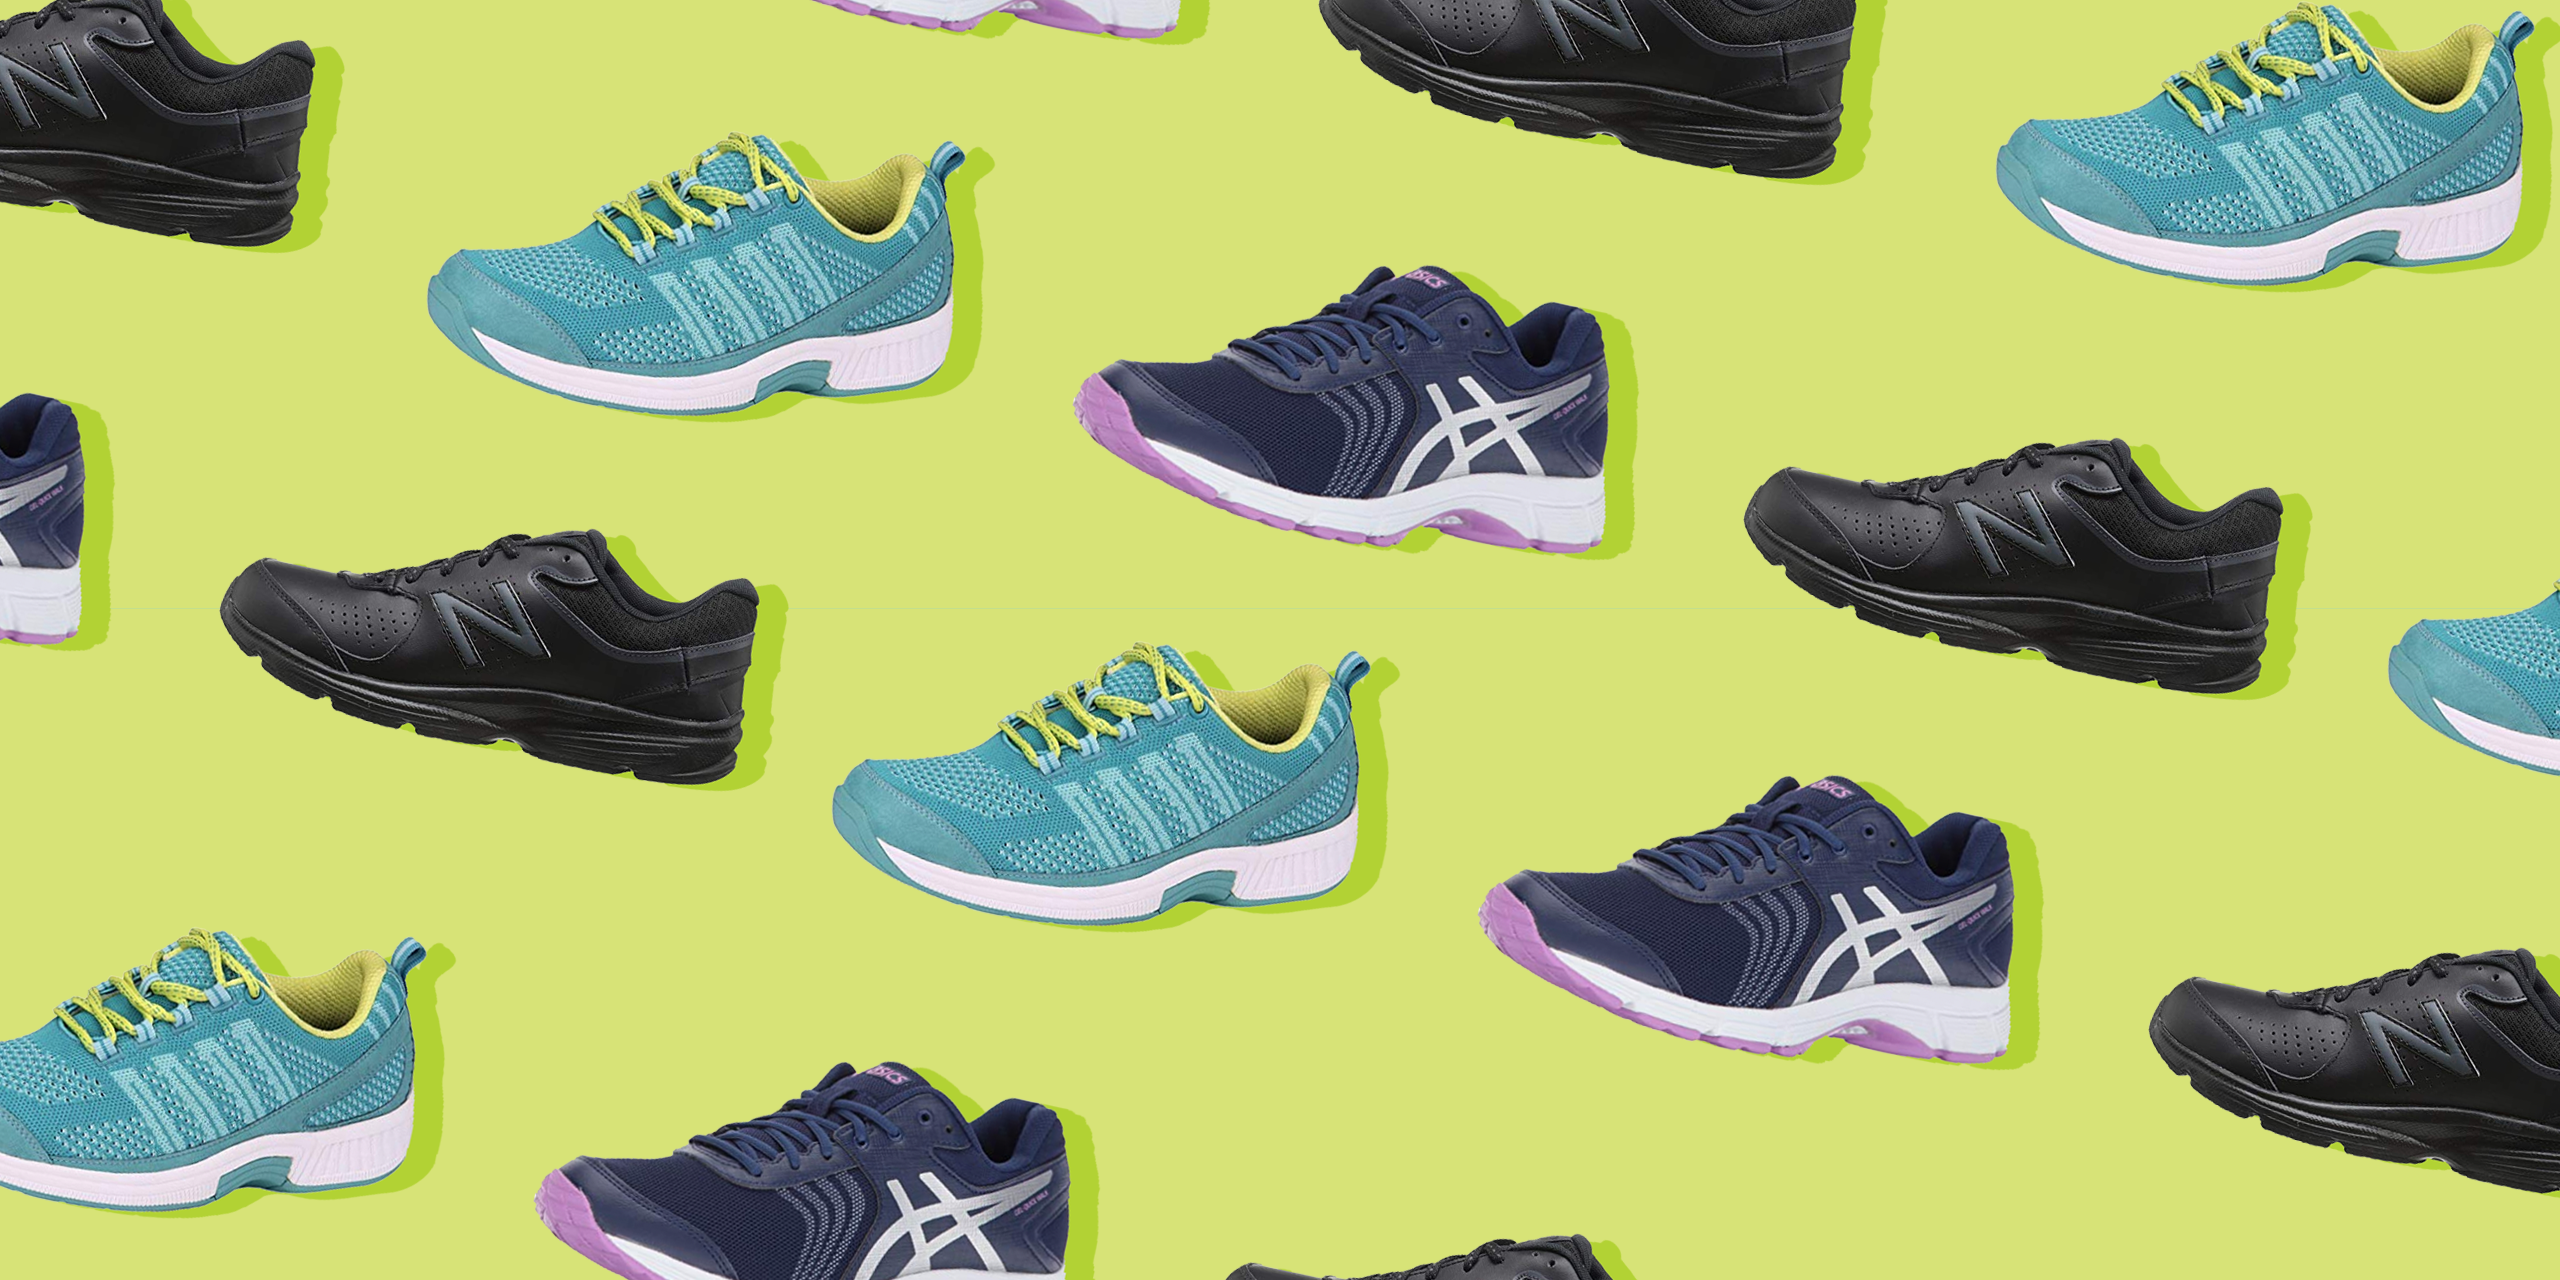 10 Best Walking Shoes for Women 2020 